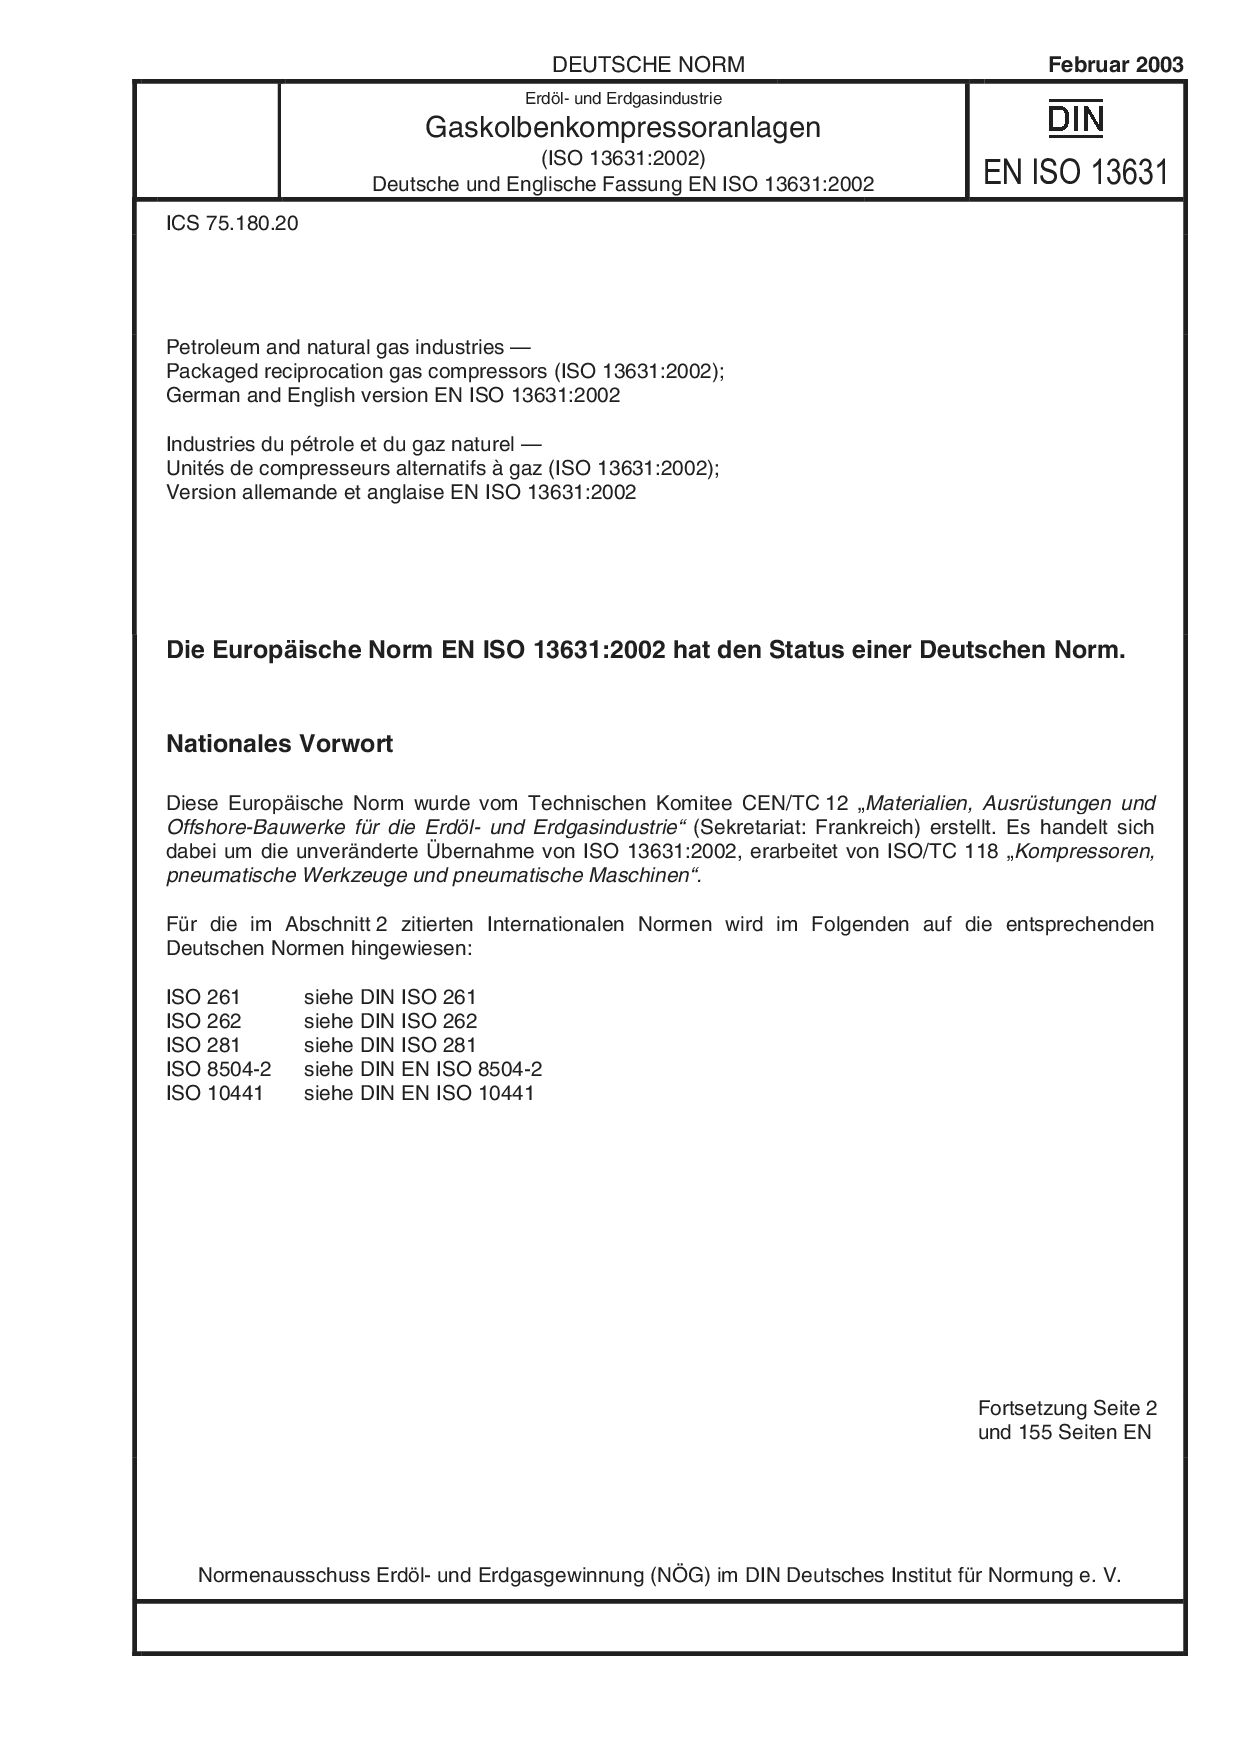 DIN EN ISO 13631:2003